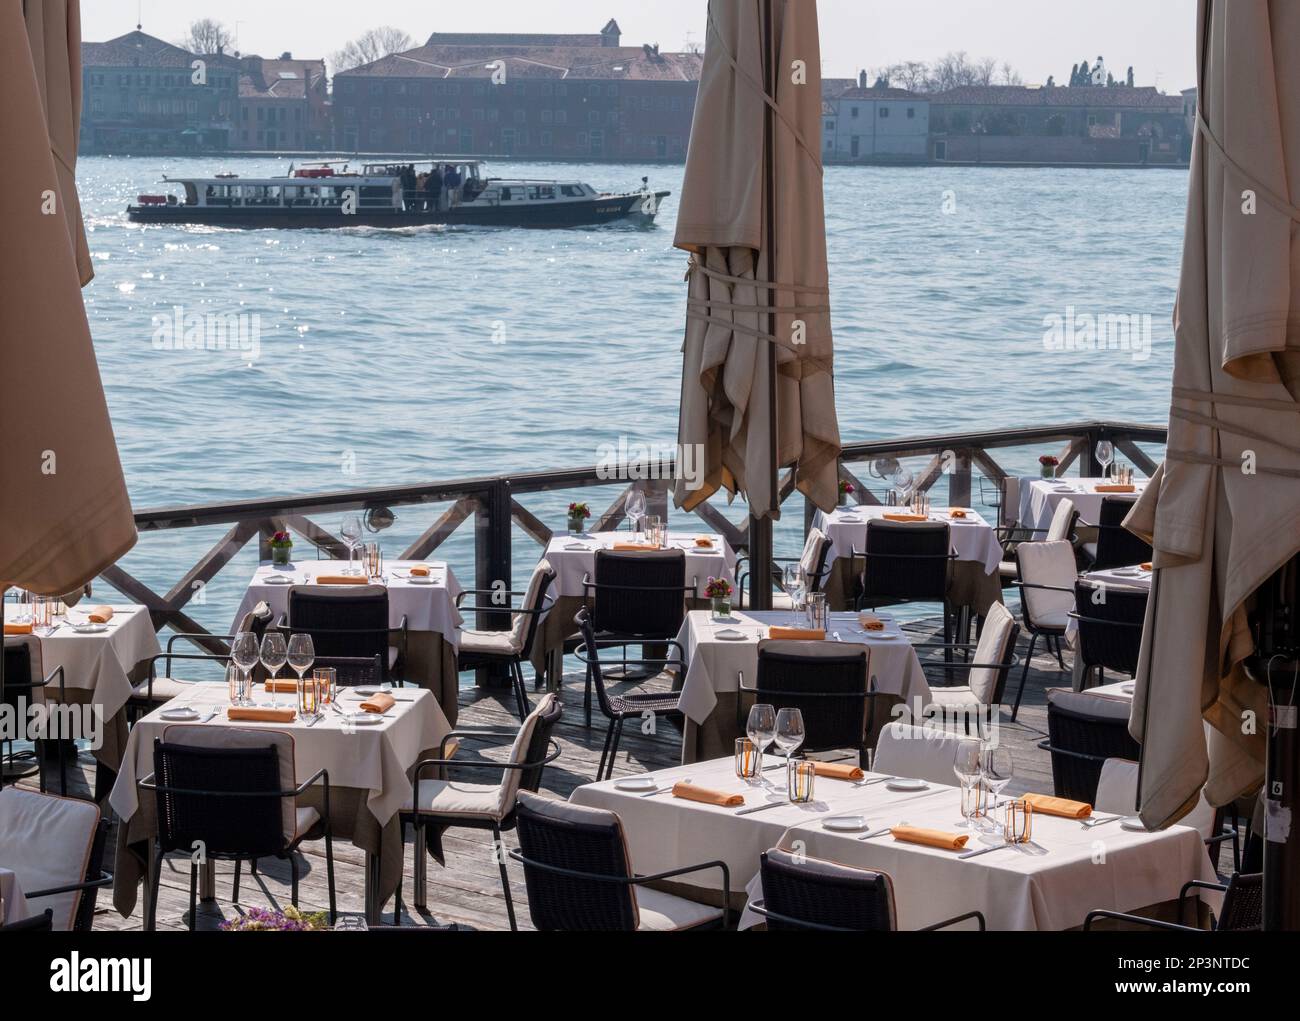 Outdoor restaurant on the embankment of the Canale Della Giudecca, overlooking the Isola di San Giorgio Maggiore, Venice, Italy. Stock Photo